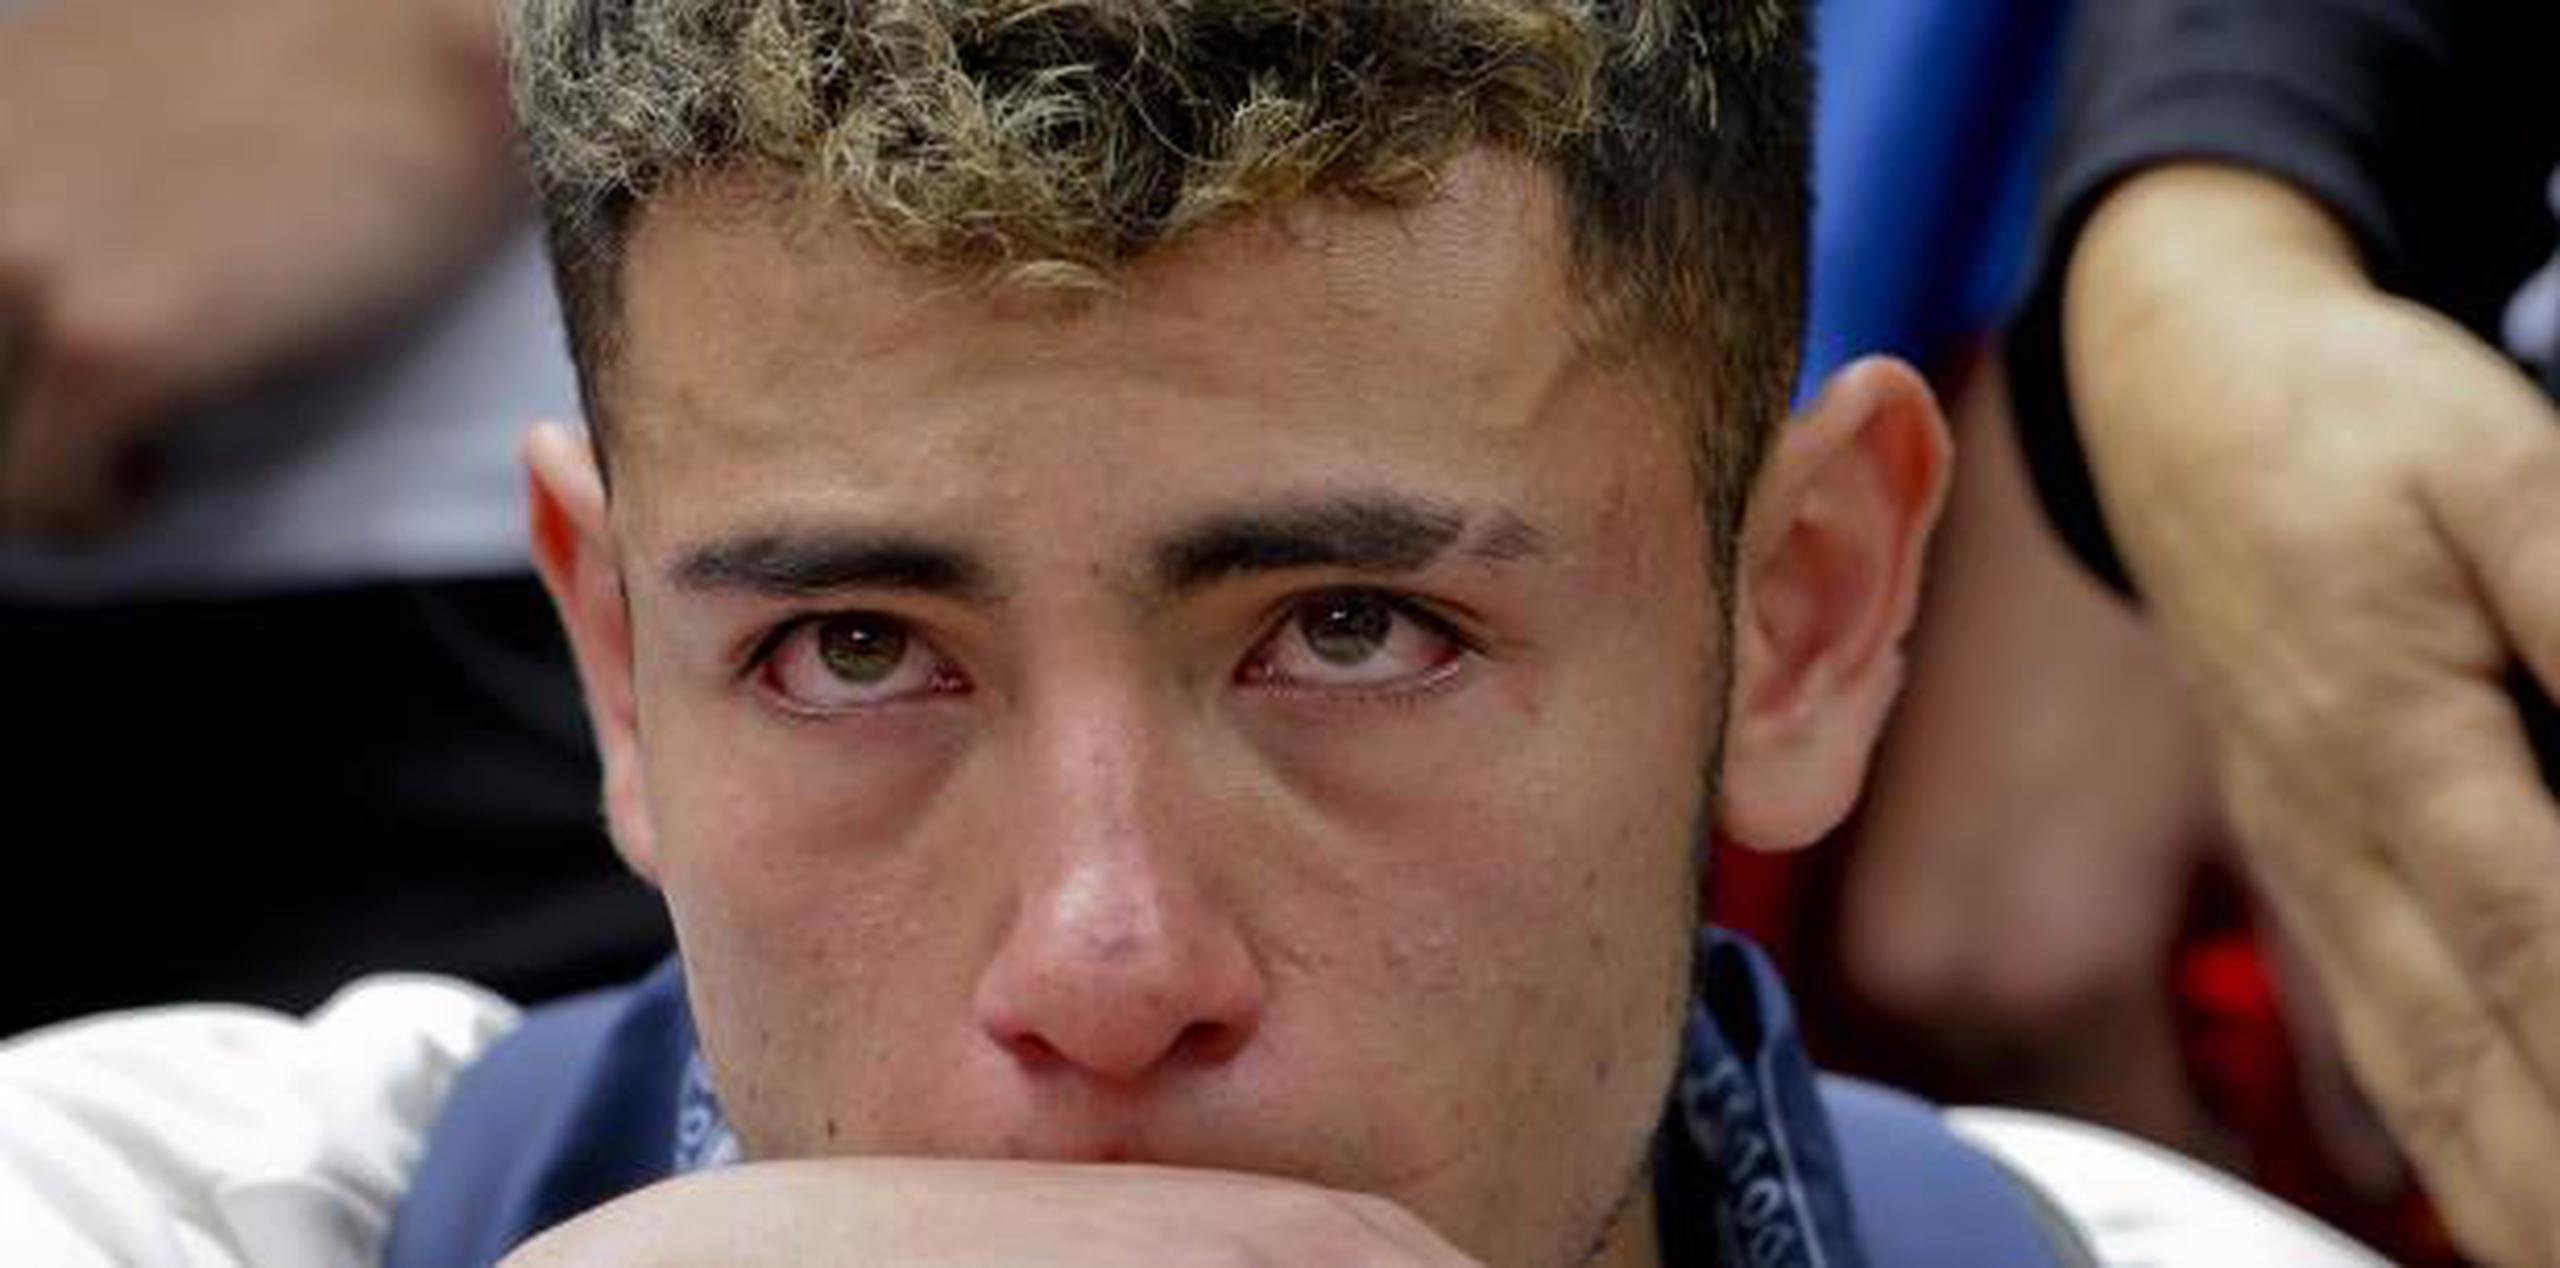 Un joven llora en uan vigilia ayer por Dilan. Su caso impactó en la sociedad colombiana, inició un debate sobre el uso excesivo de la fuerza y lo convirtió en un símbolo para muchos manifestantes jóvenes. (AP)